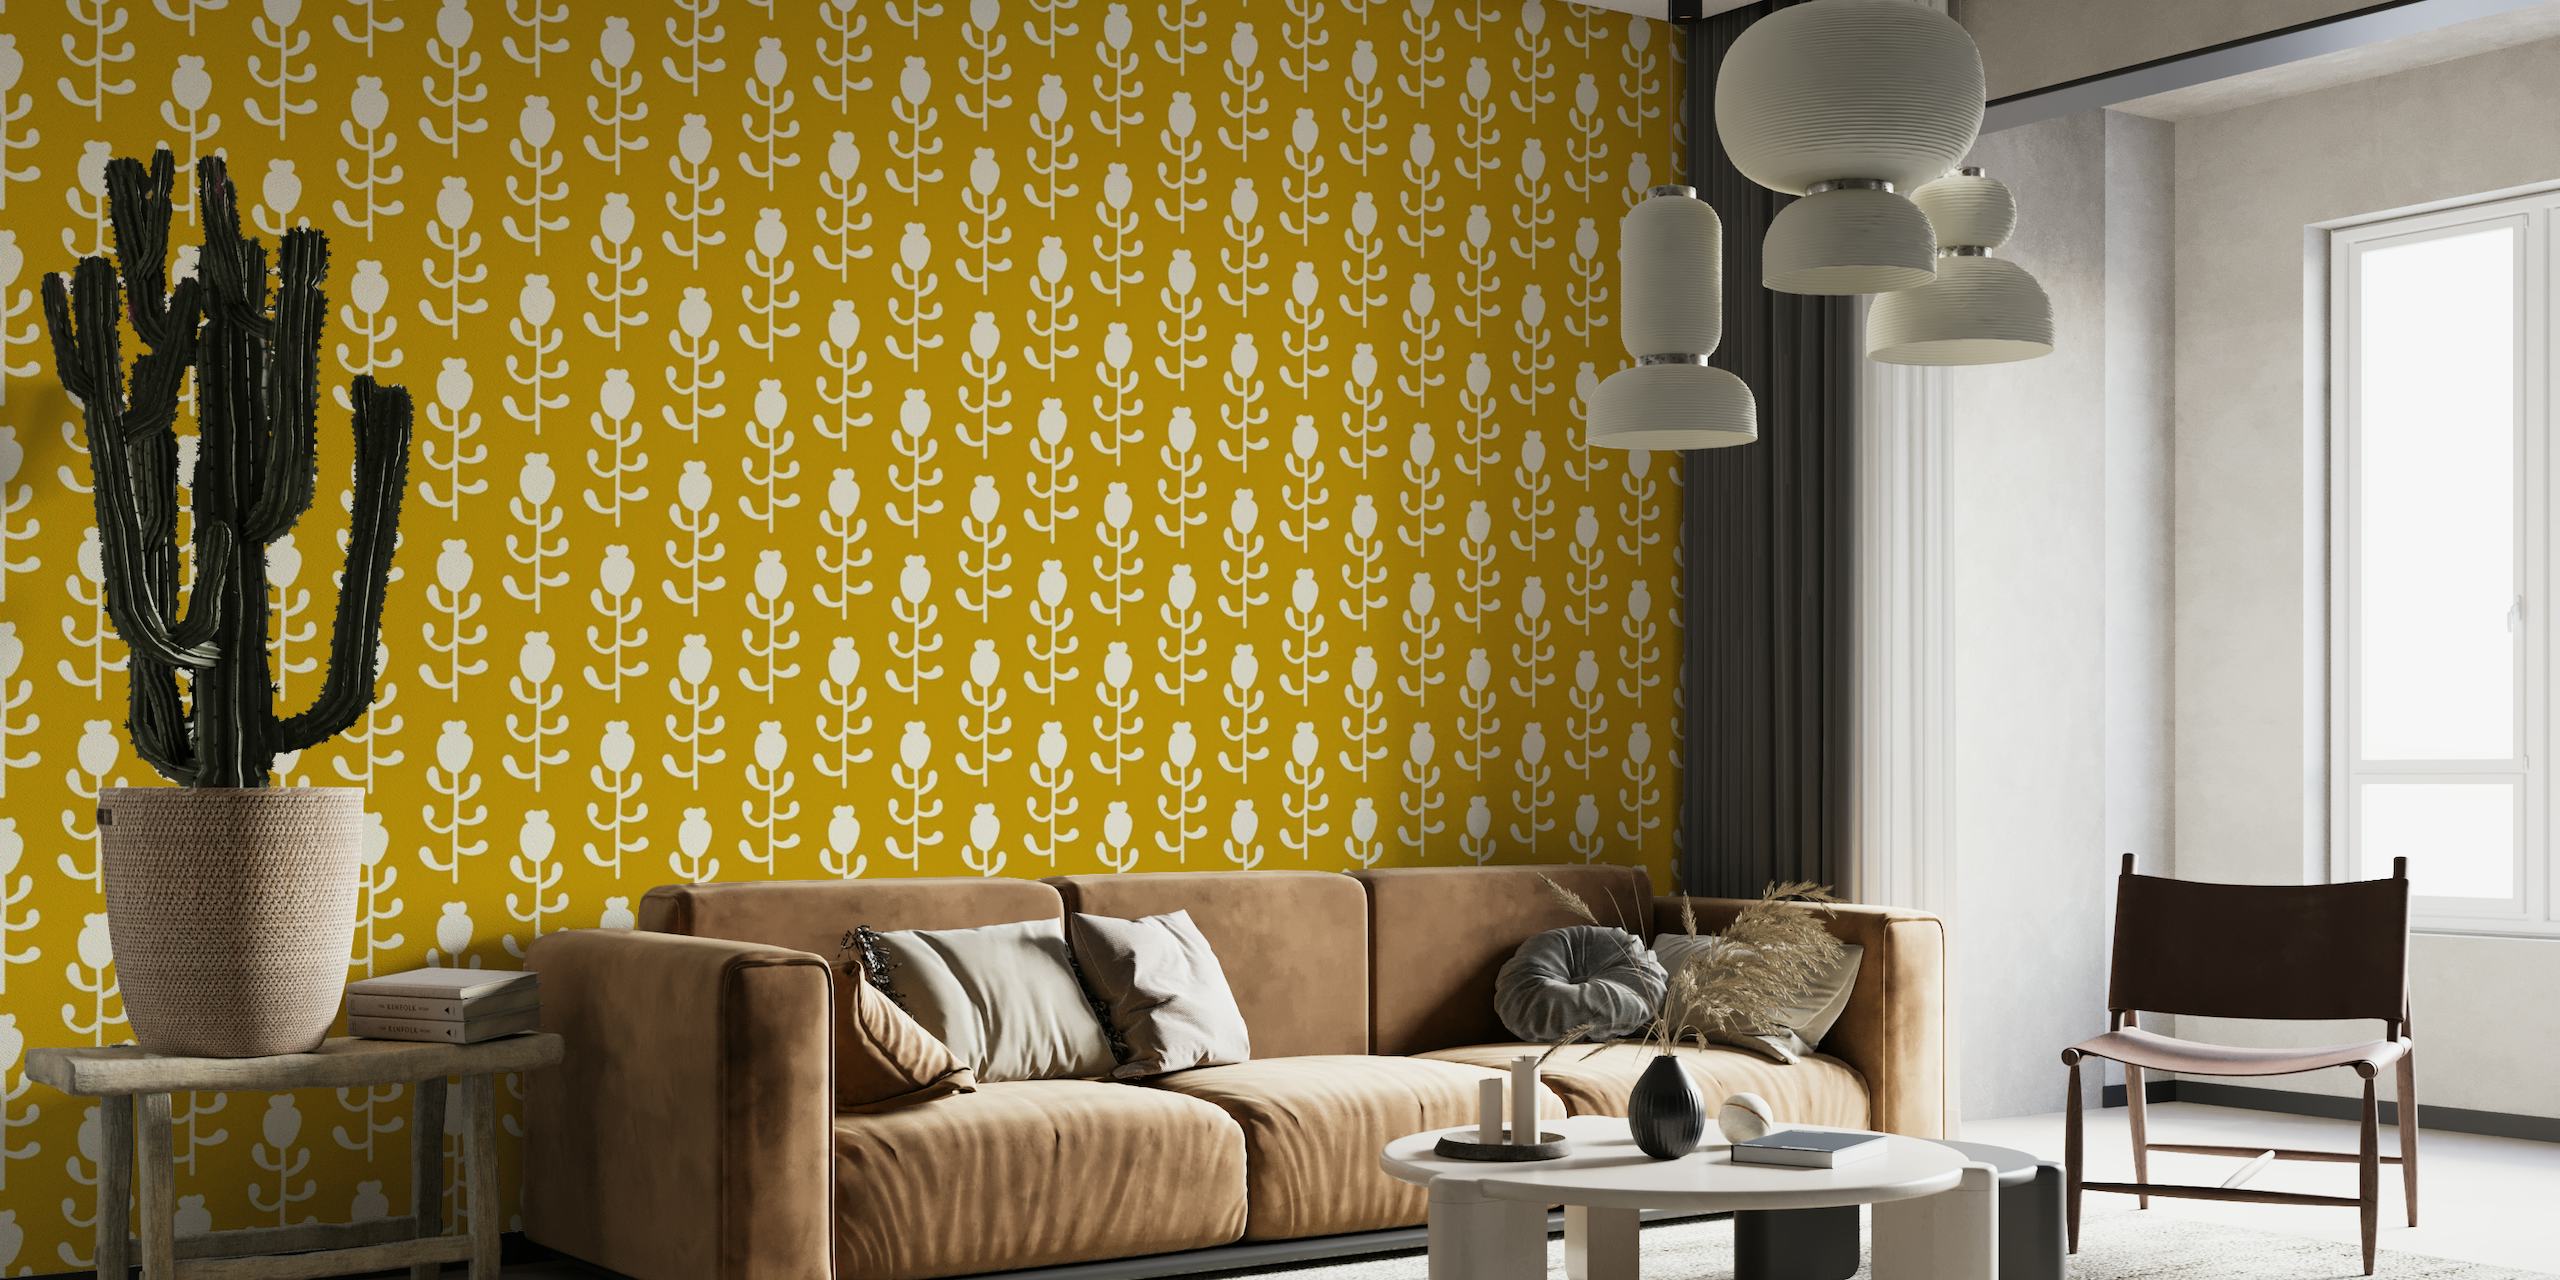 2569 - floral pattern, mustard yellow papel pintado